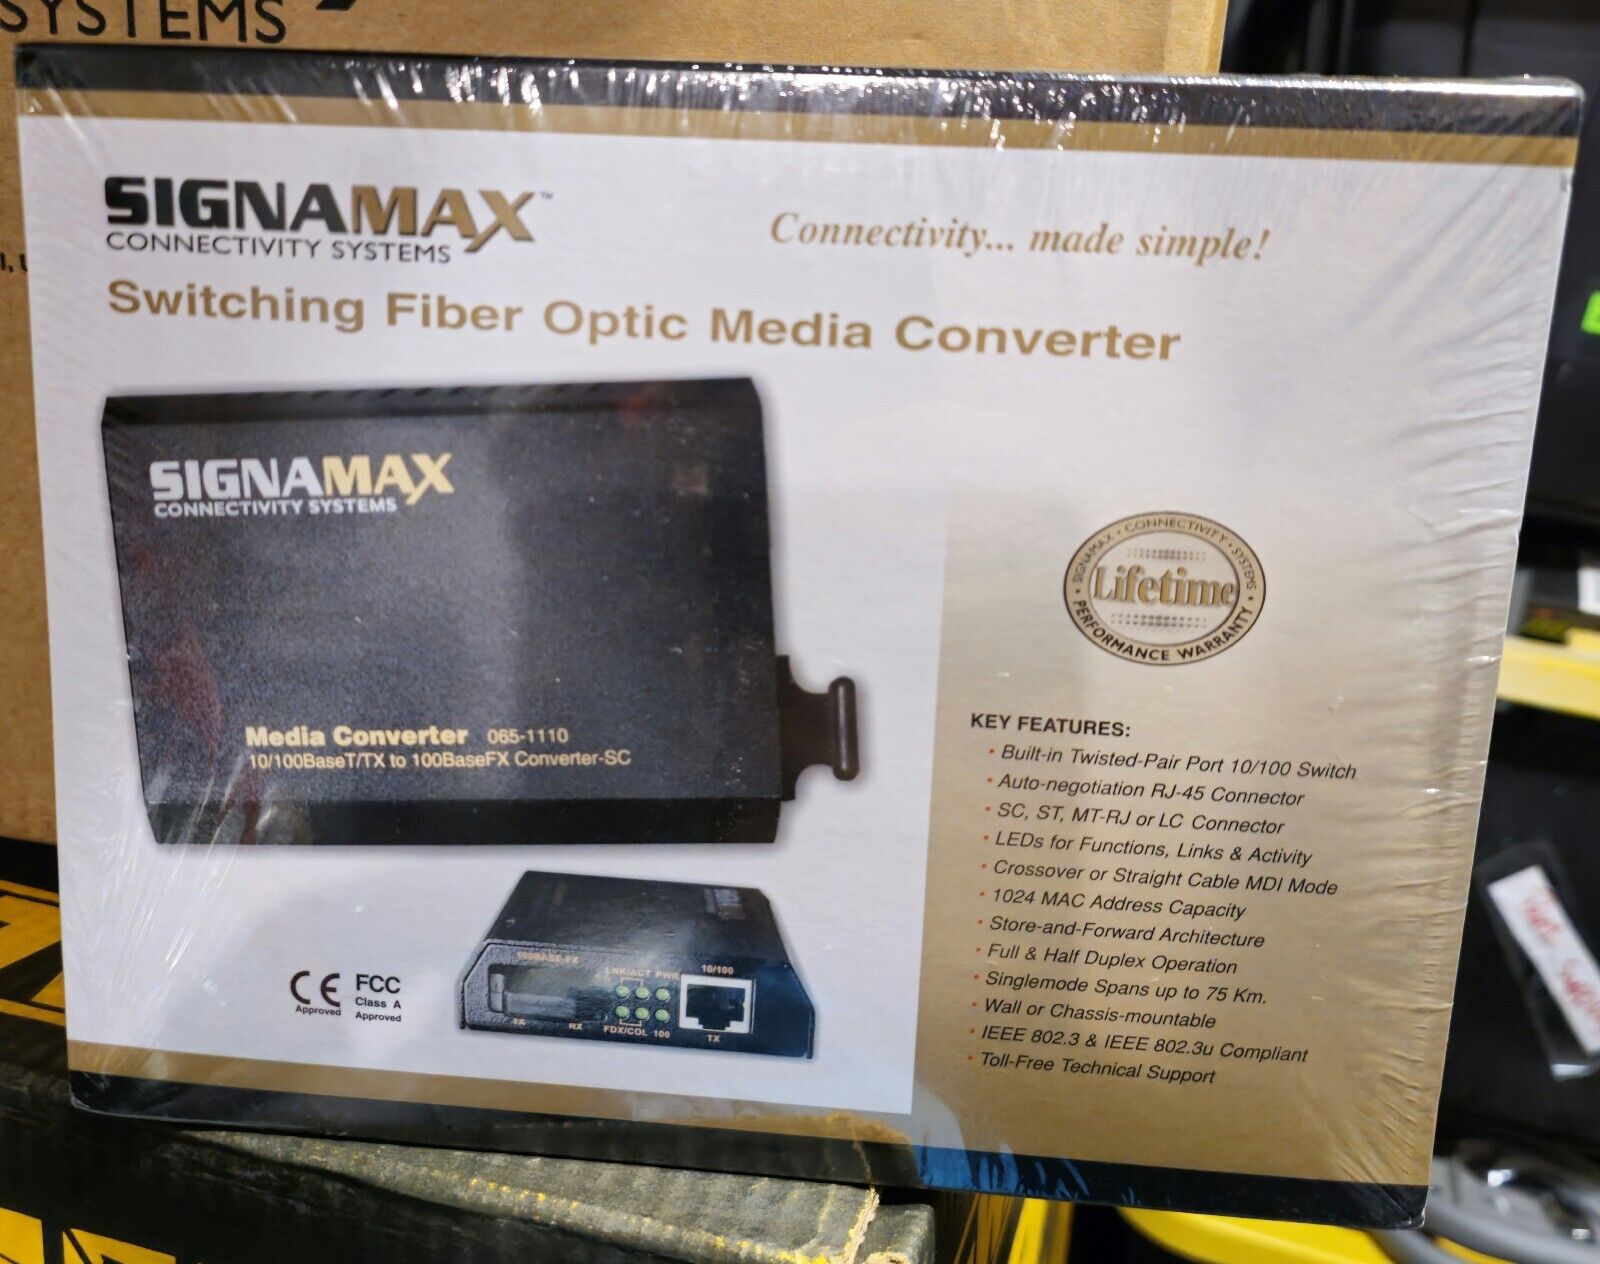 Signamax Media Converter 065-1110 10/100BaseT/TX to 100BaseFX Multimode - Fiber